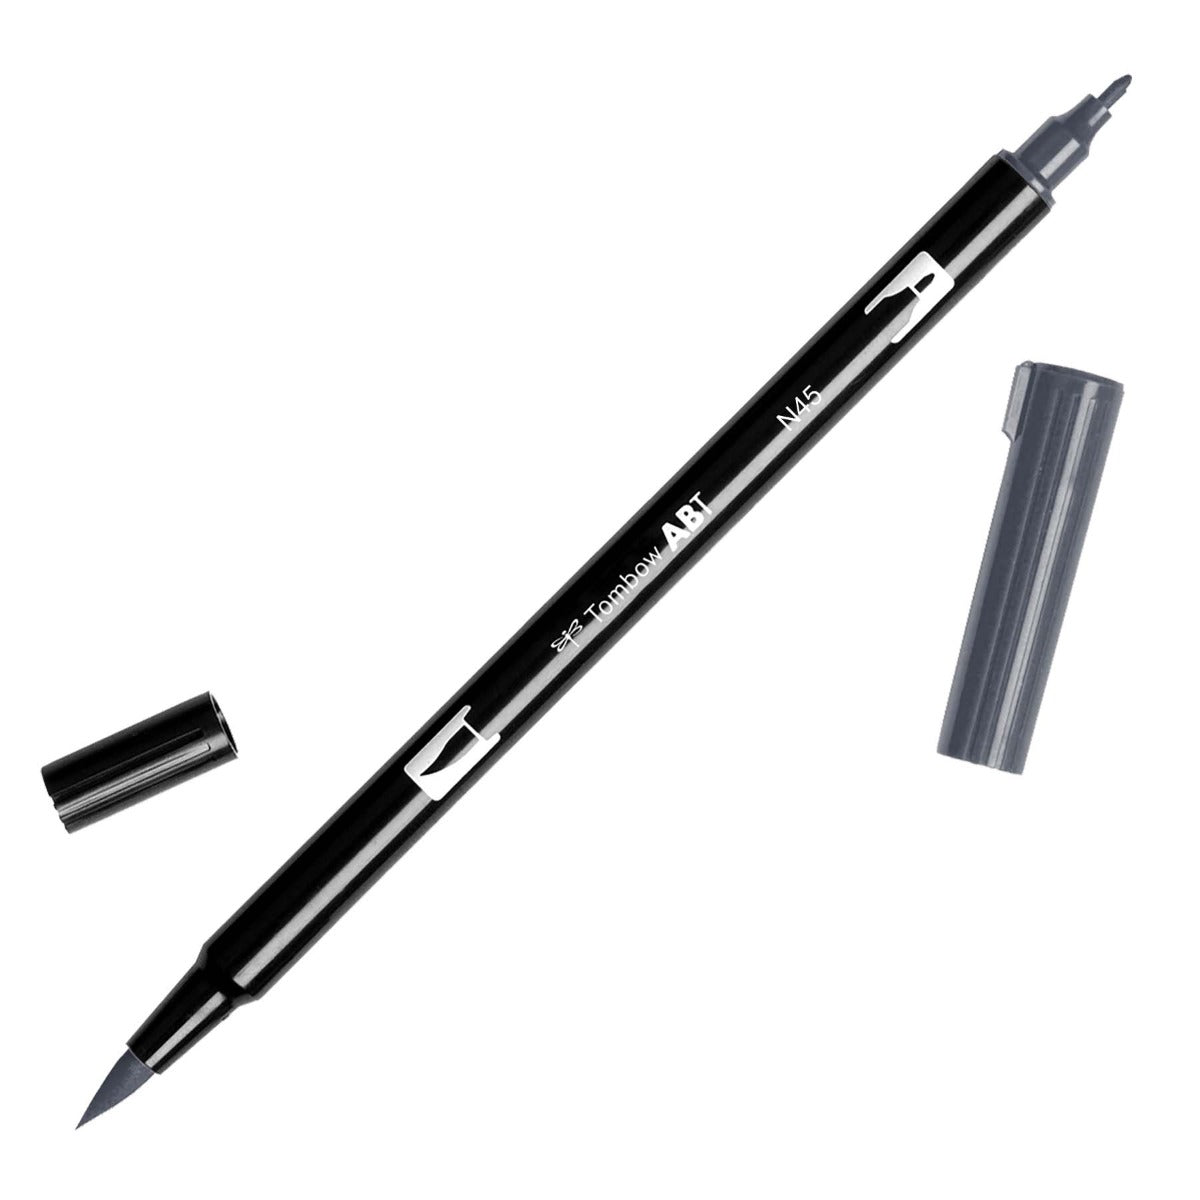 Oboustranný štětcový fix ABT Dual Brush Pen - černé, šedé a transparentní odstíny